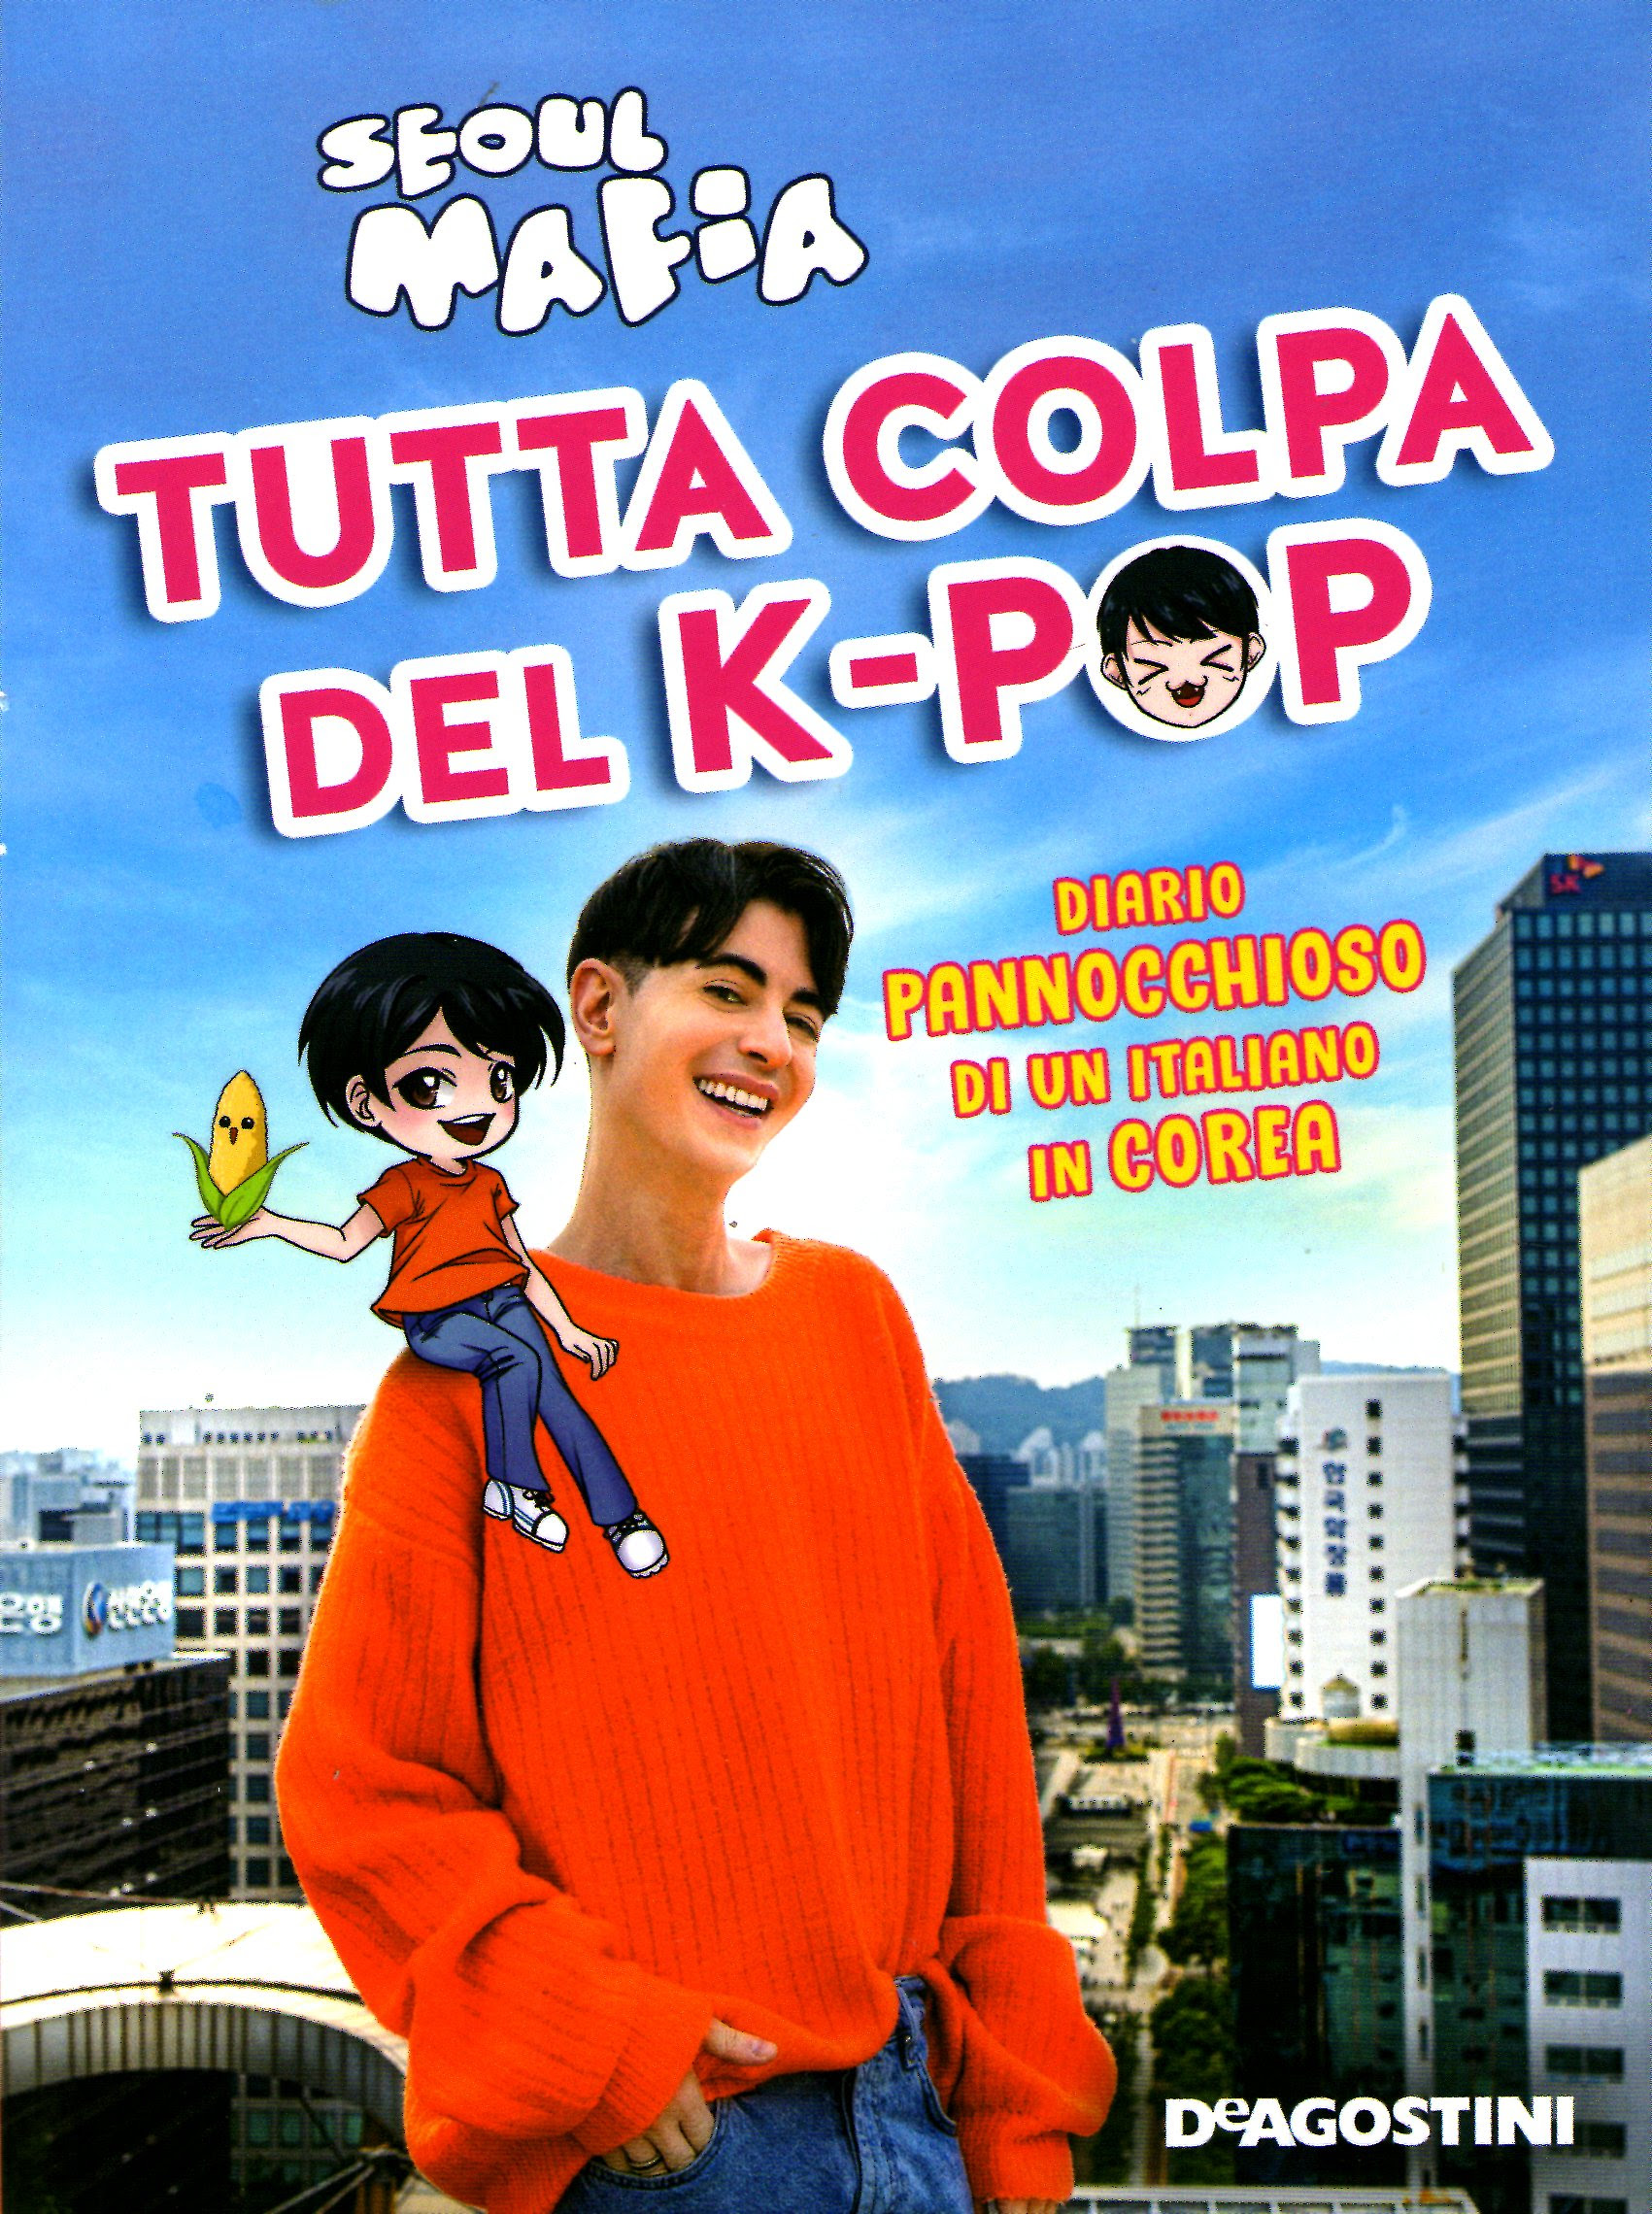 Tutta colpa del K-pop: Diario pannocchioso di un italiano in Corea in Kindle/PDF/EPUB